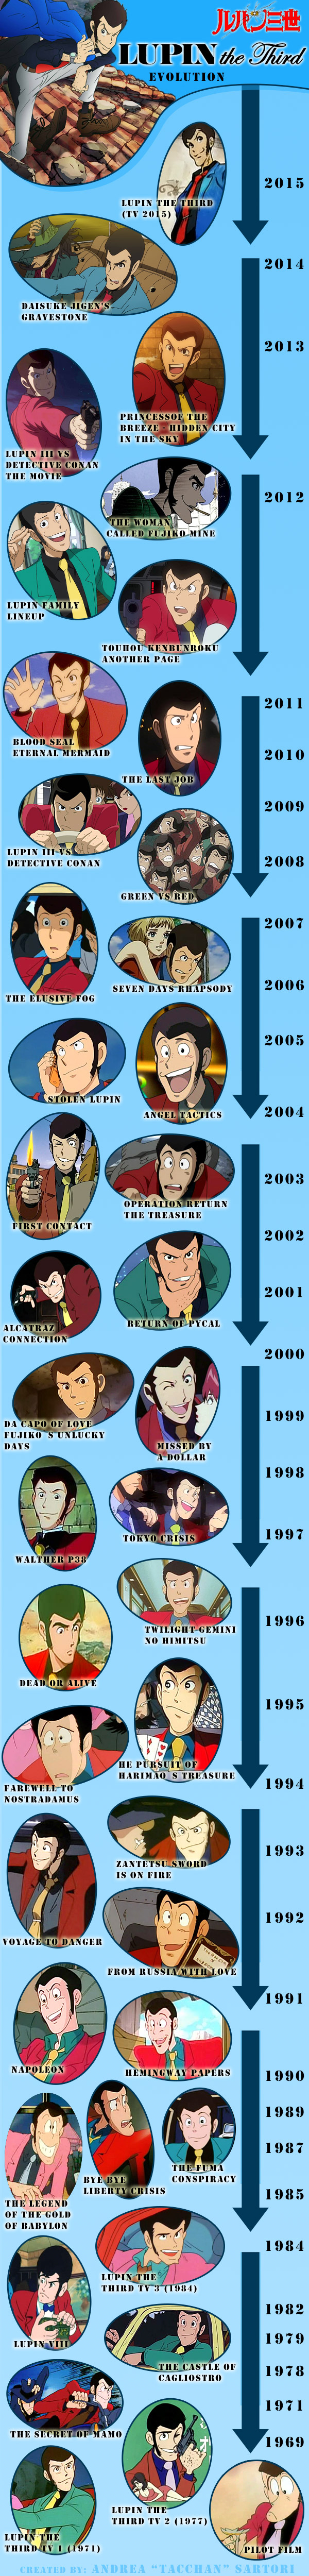 Lupin III - giacche e look dal 1969 al 2015